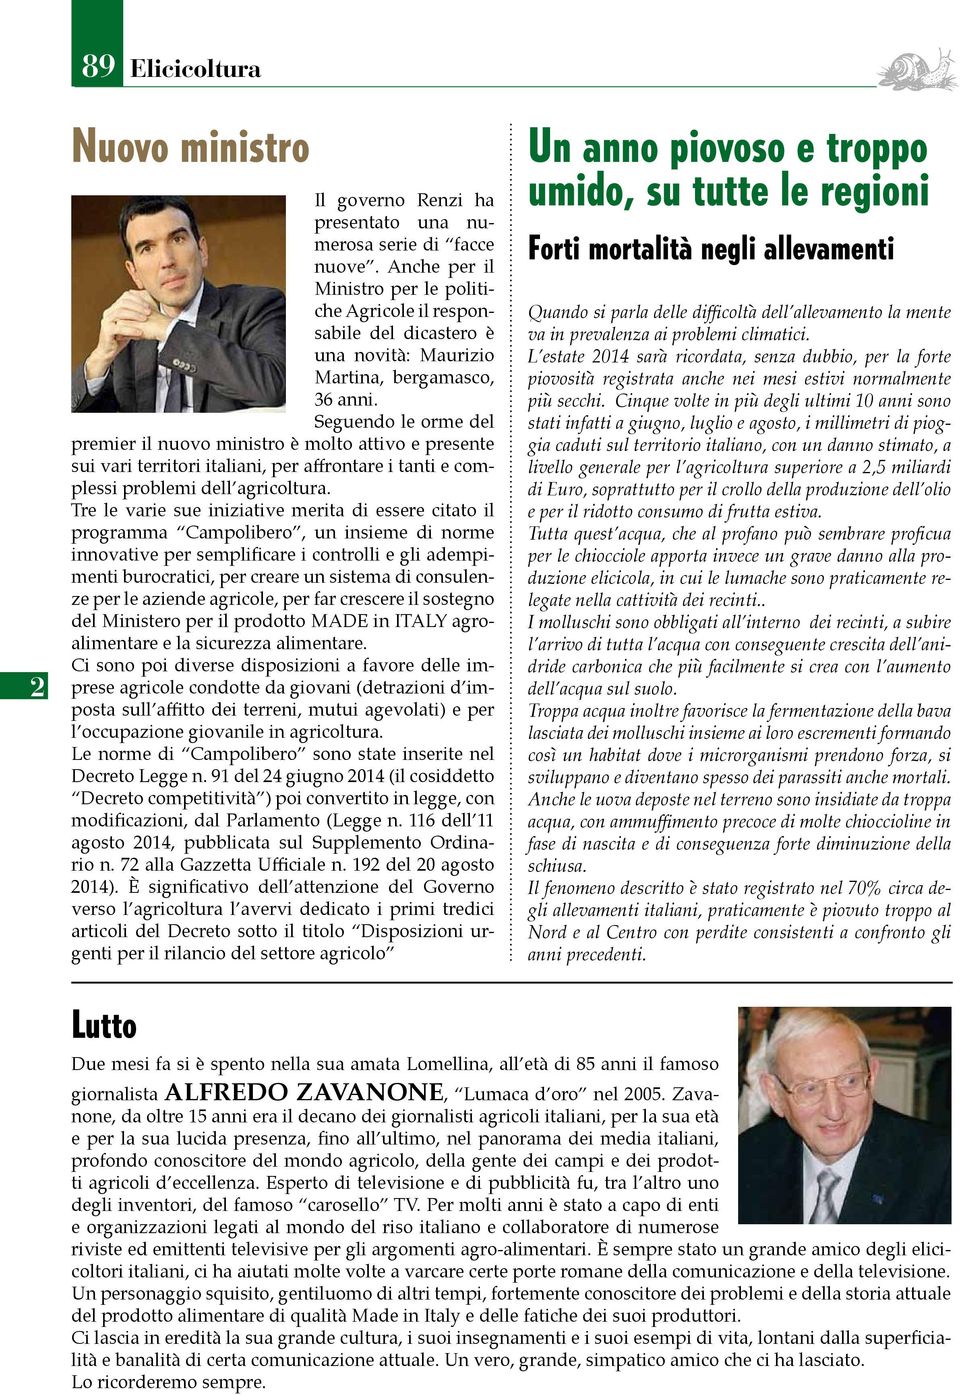 Seguendo le orme del premier il nuovo ministro è molto attivo e presente sui vari territori italiani, per affrontare i tanti e complessi problemi dell agricoltura.